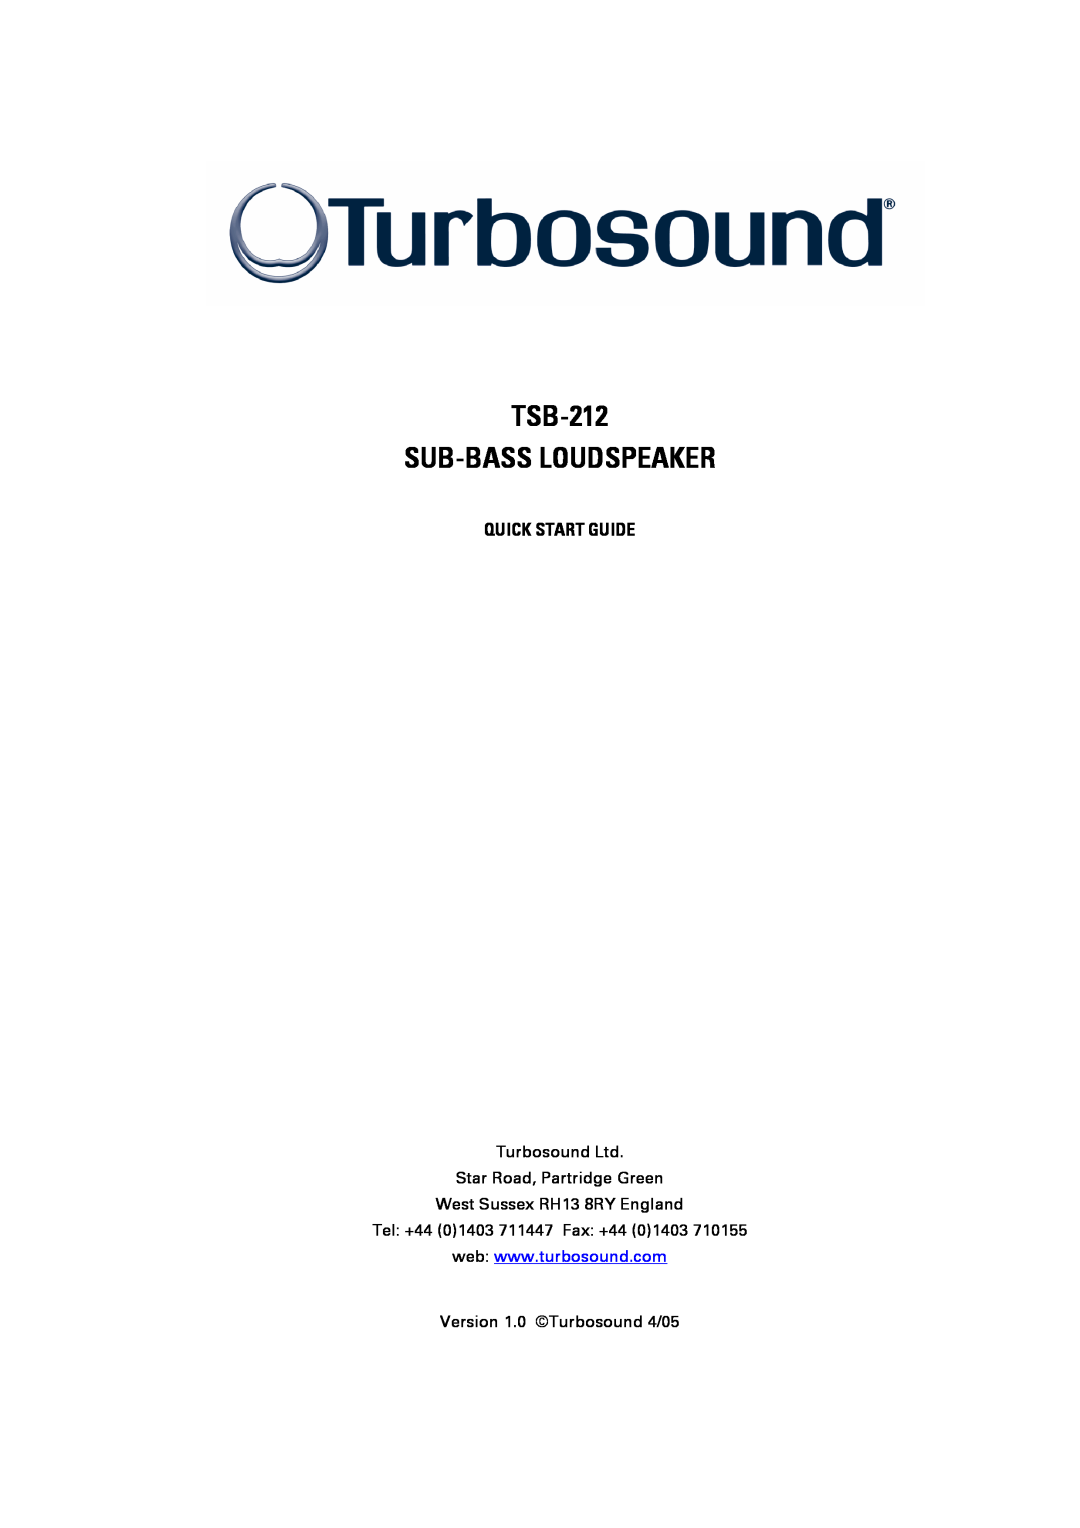 Turbosound quick start Quick Start Guide, TSB-212 SUB-BASSLOUDSPEAKER, West Sussex RH13 8RY England 